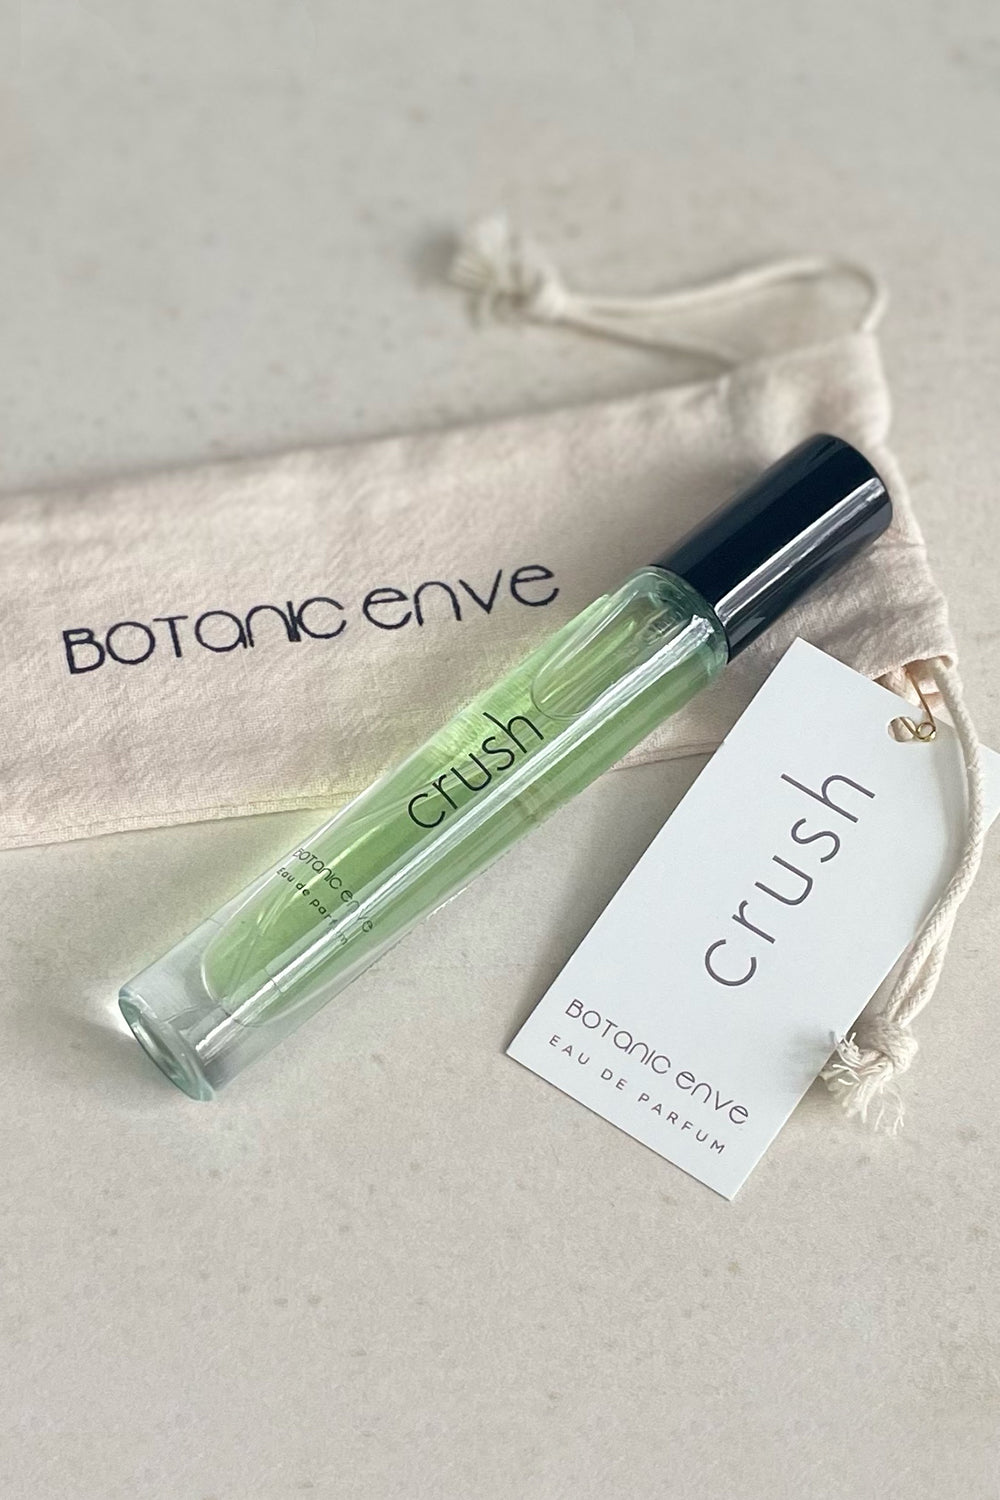 Botanic Enve / Crush Eau de Parfum / 10ml